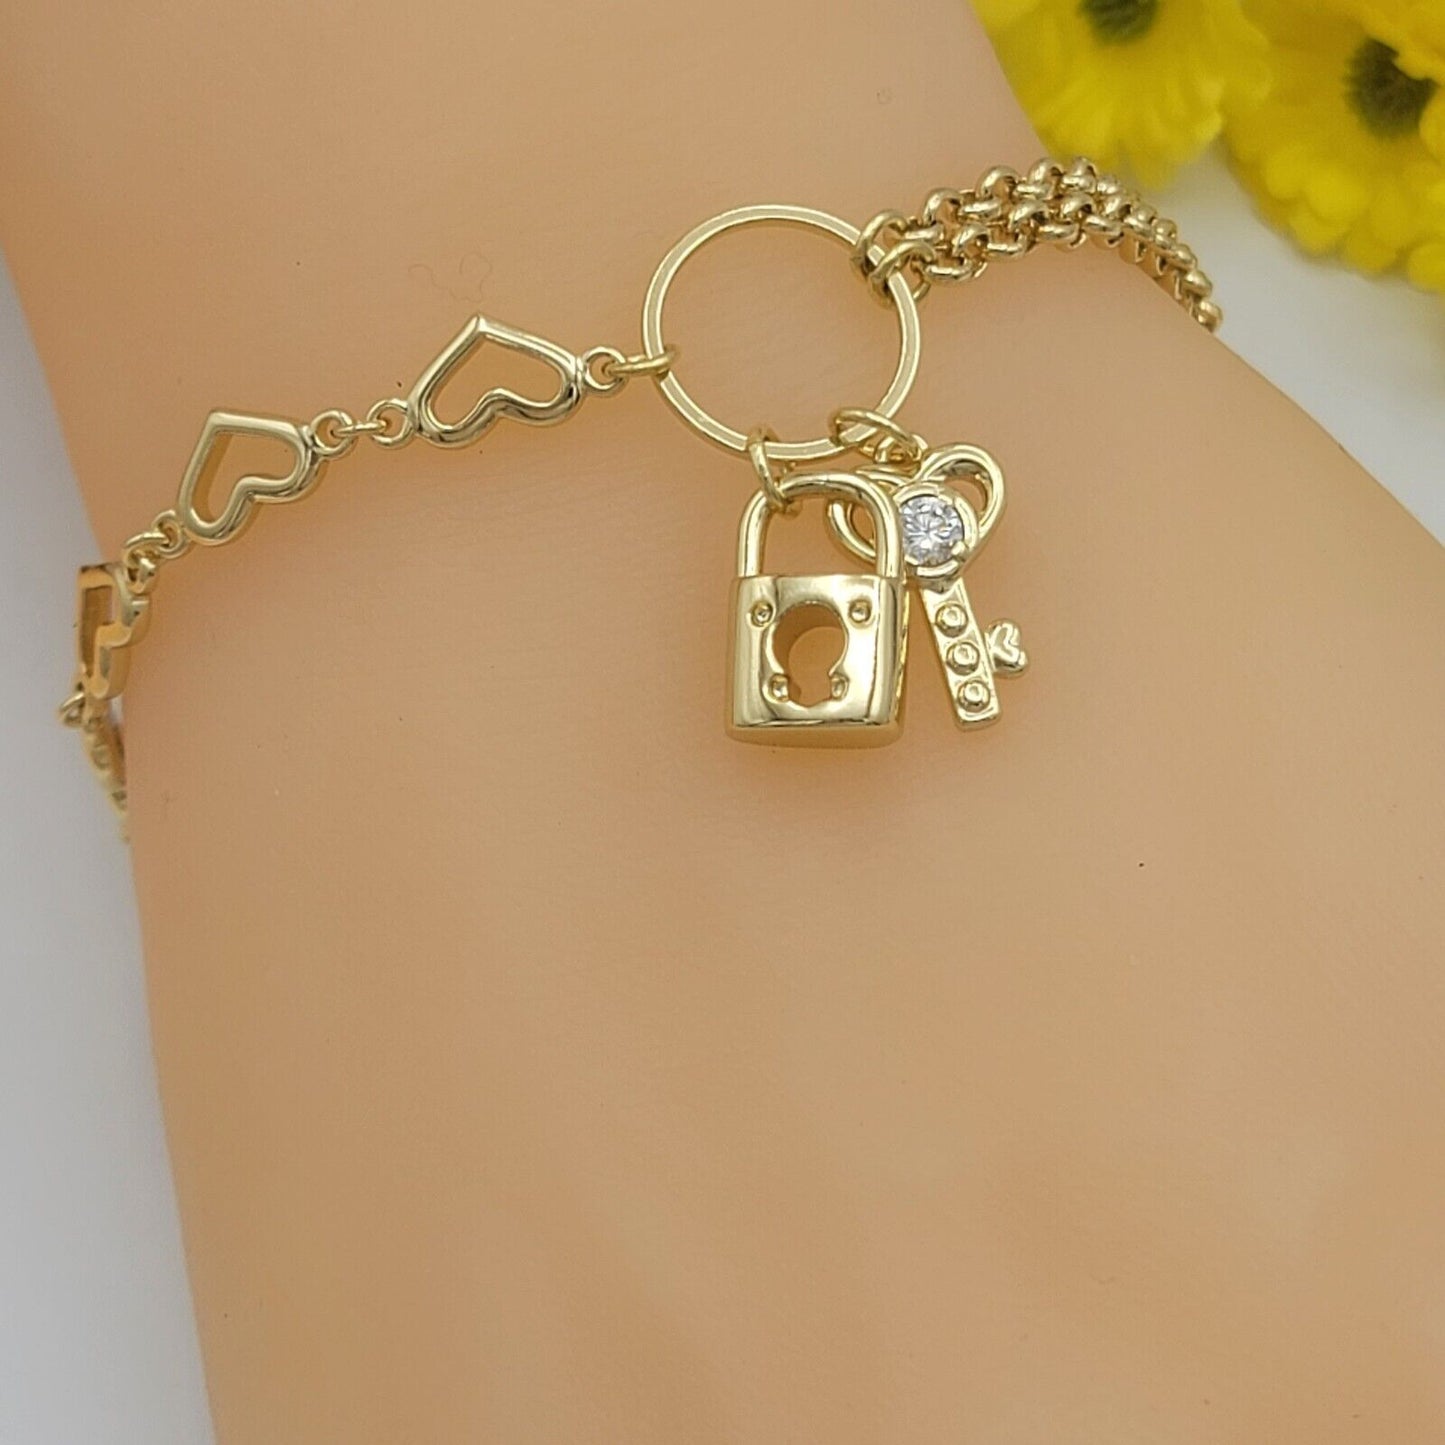 Bracelets - 14K Gold Plated. Padlock & Key Charms Hearts & Double Chain Bracelet Fancy Unique